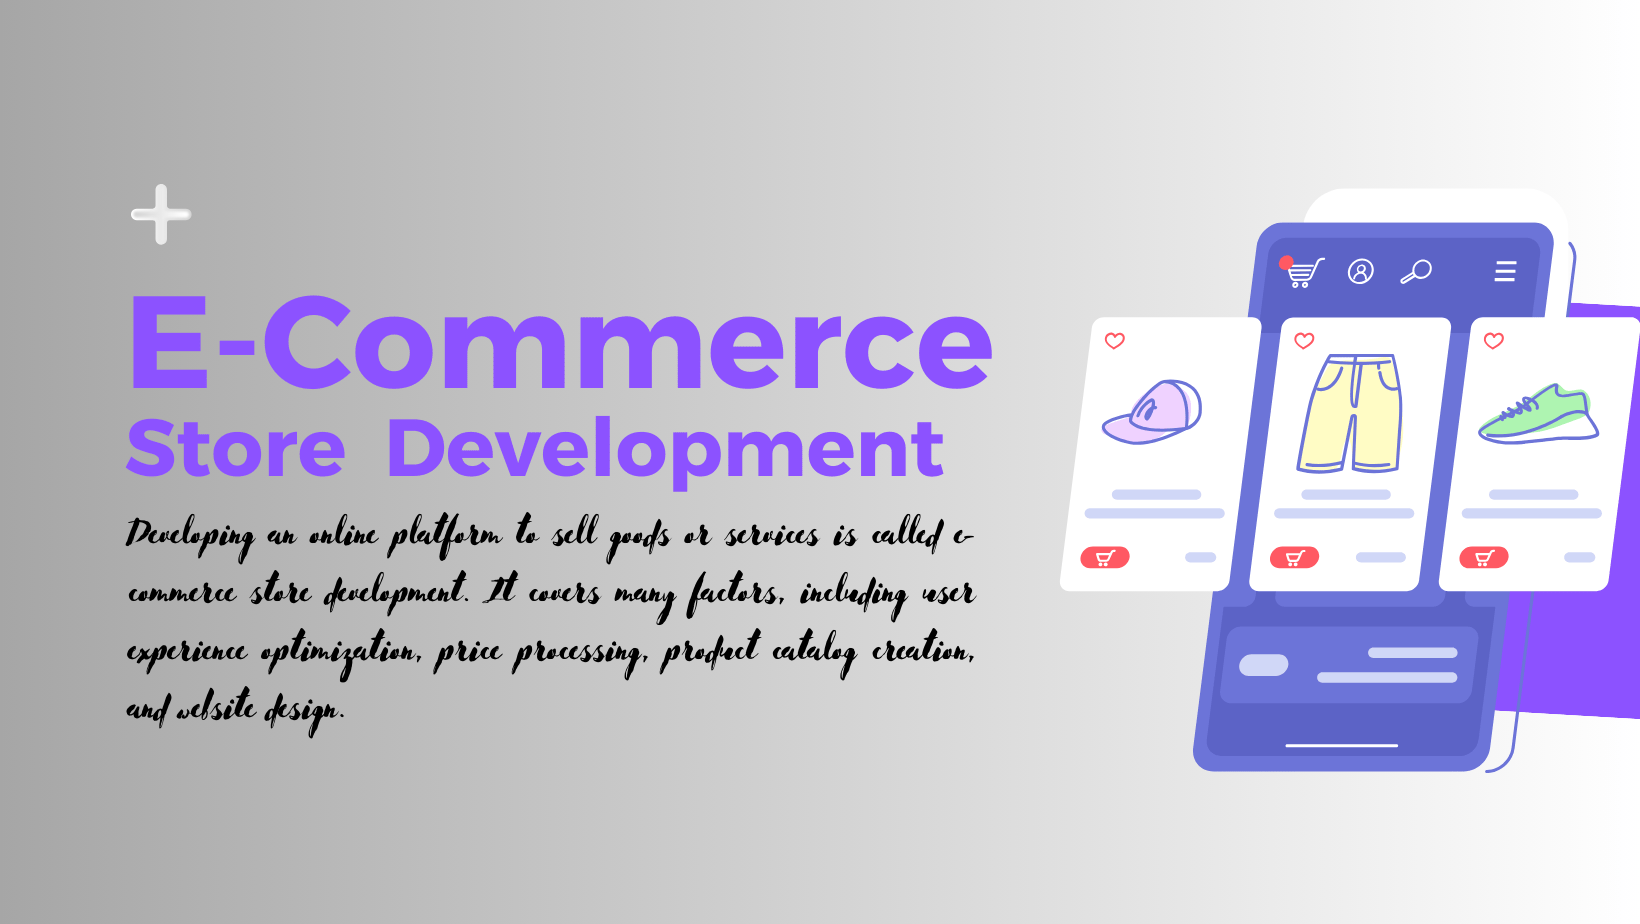 E-Commerce Store Development